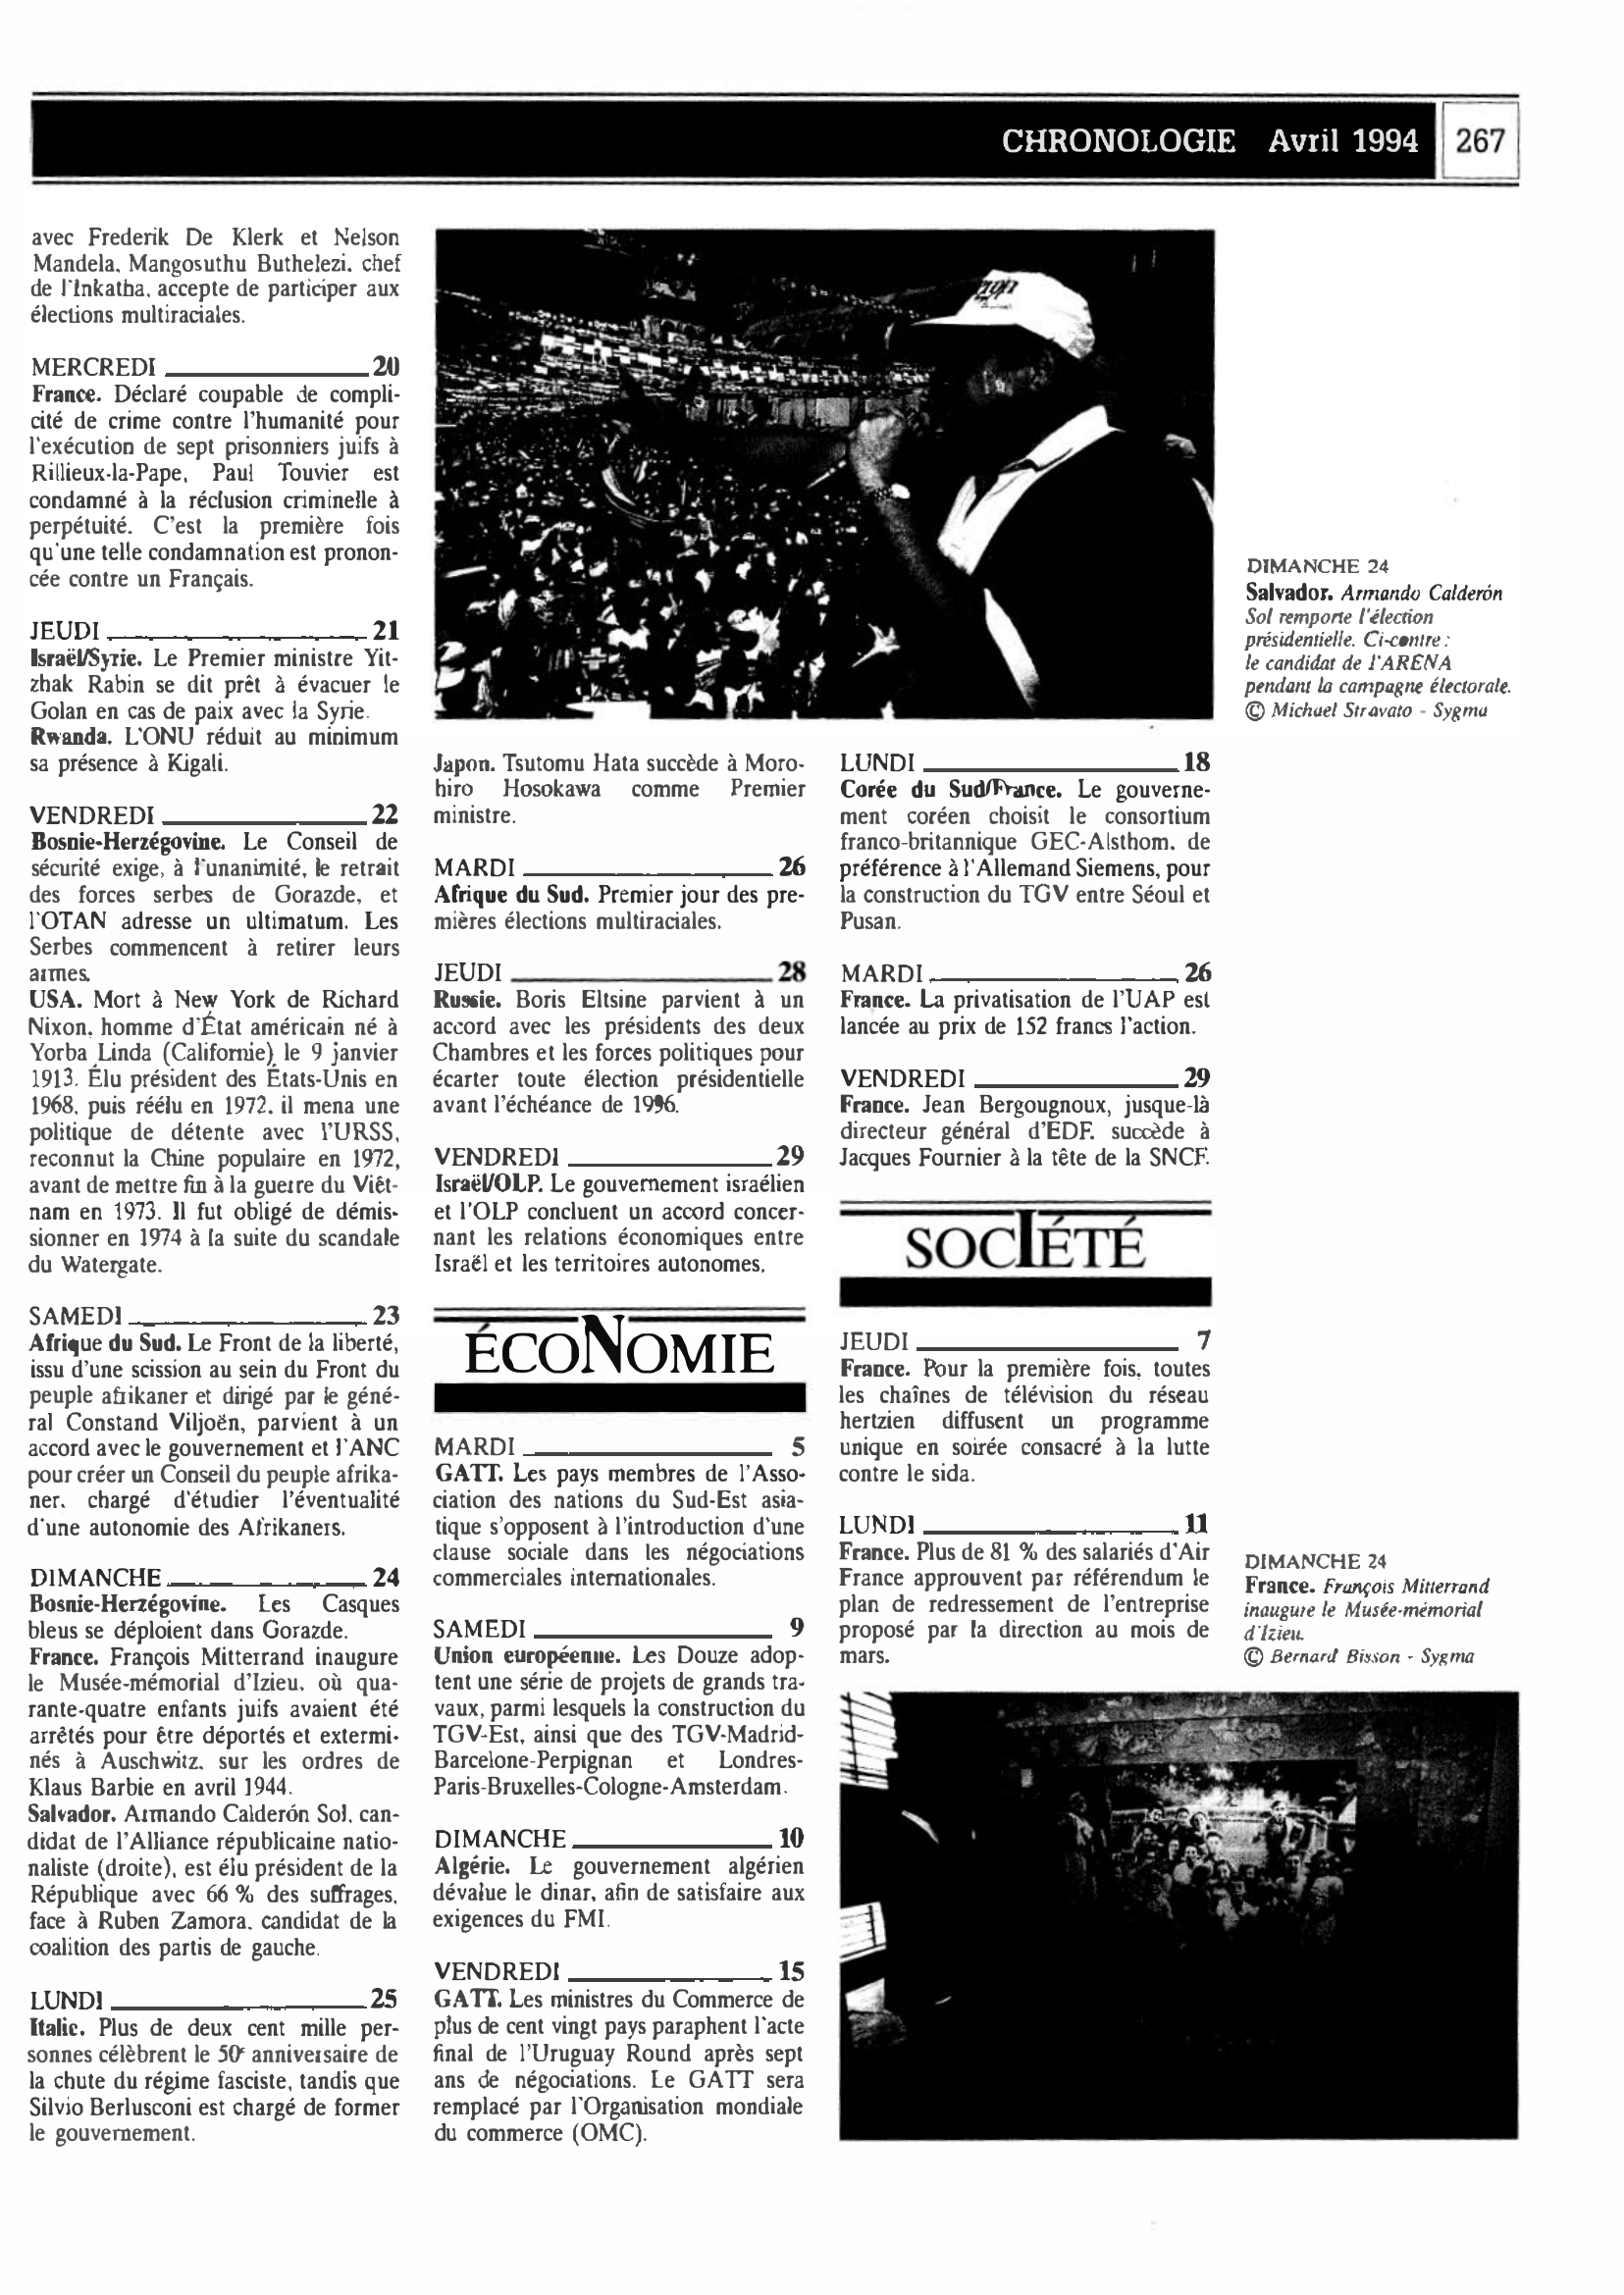 Prévisualisation du document CHRONOLOGIE Avril 1994 dans le monde (histoire chronologique)